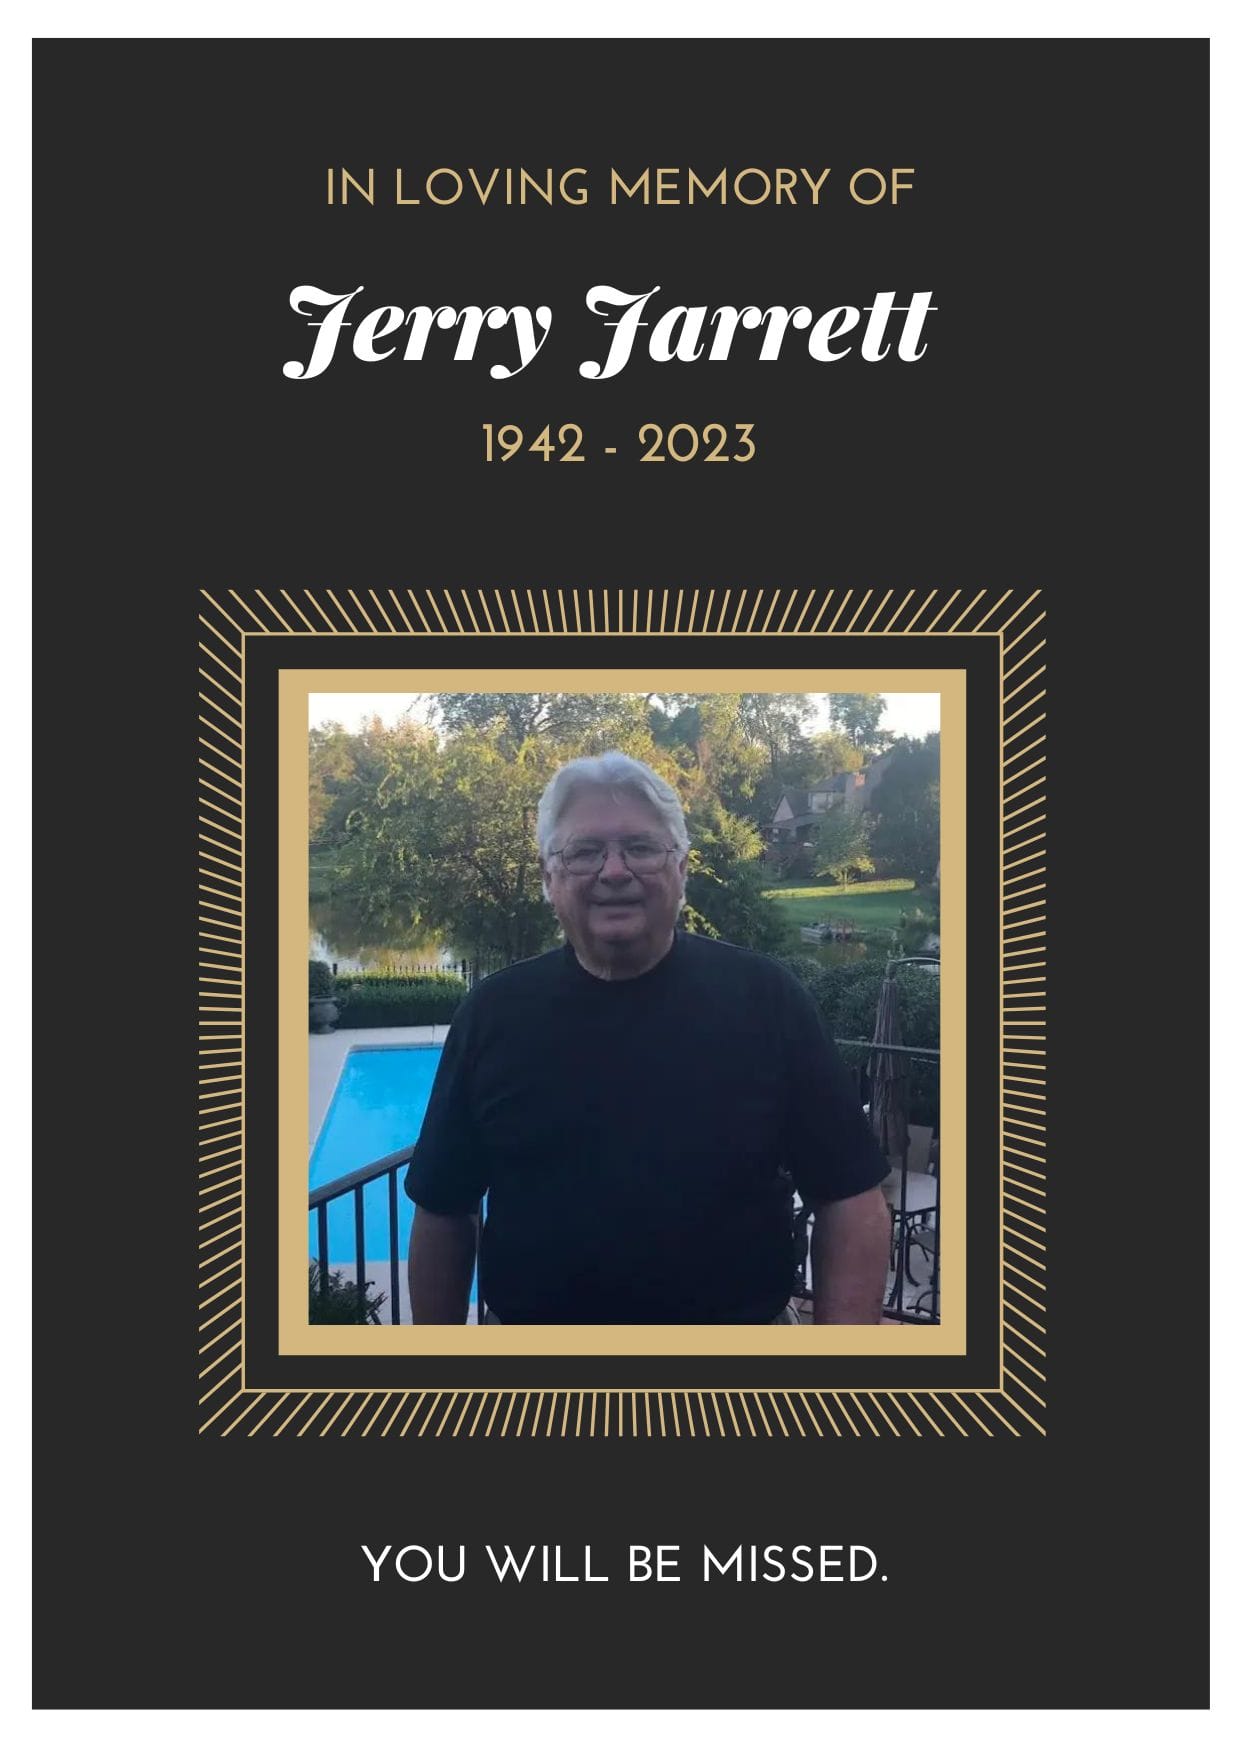 Jerry Jarrett Death 